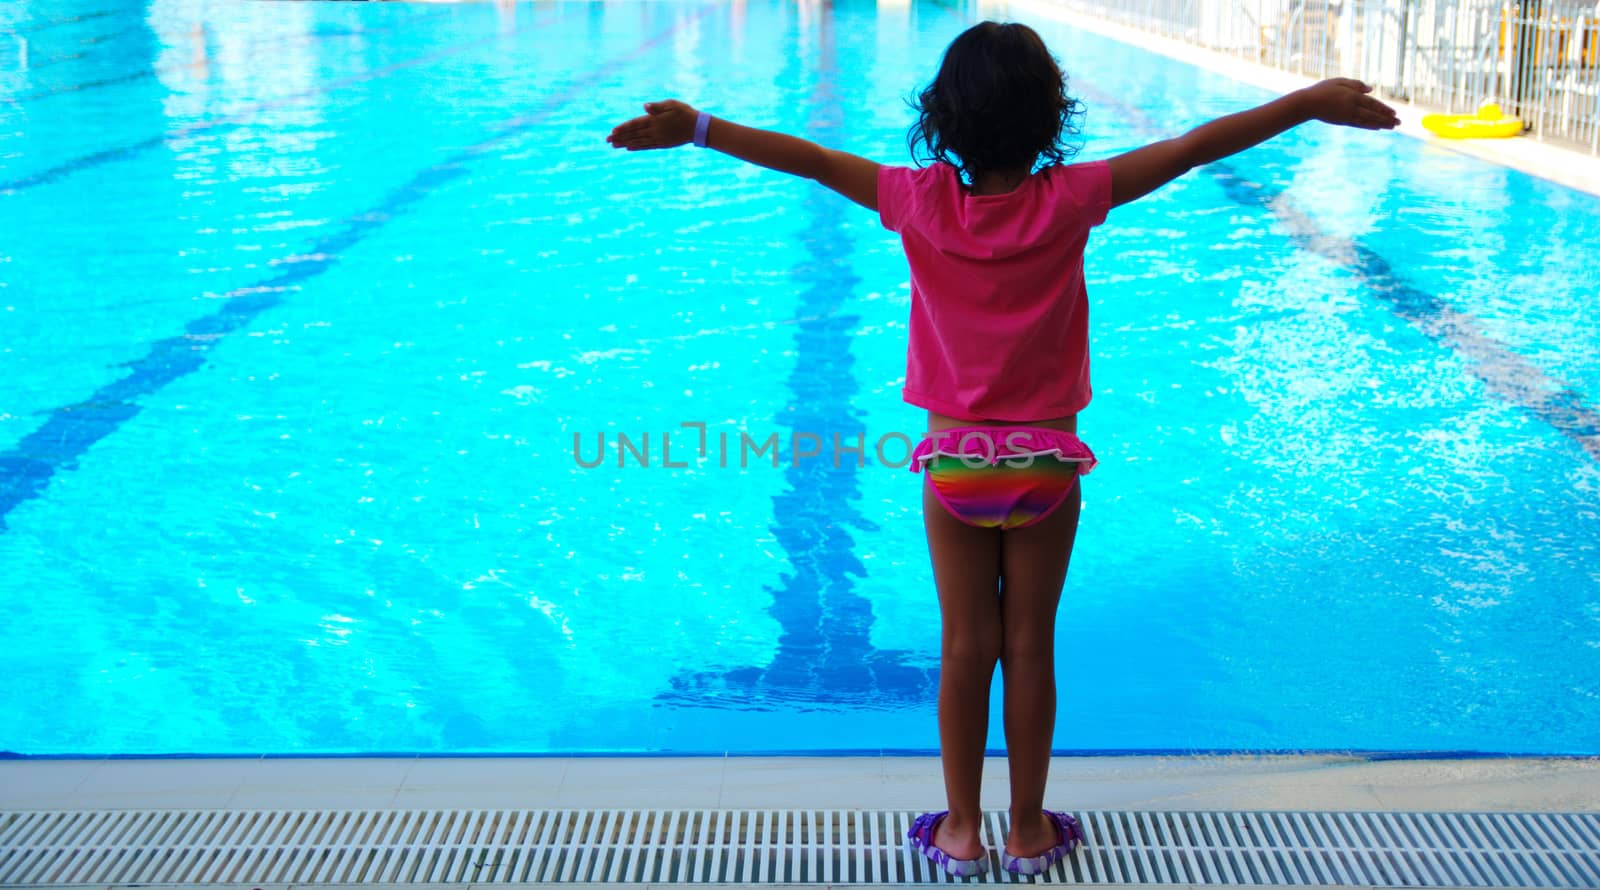 pool and little girl by yebeka